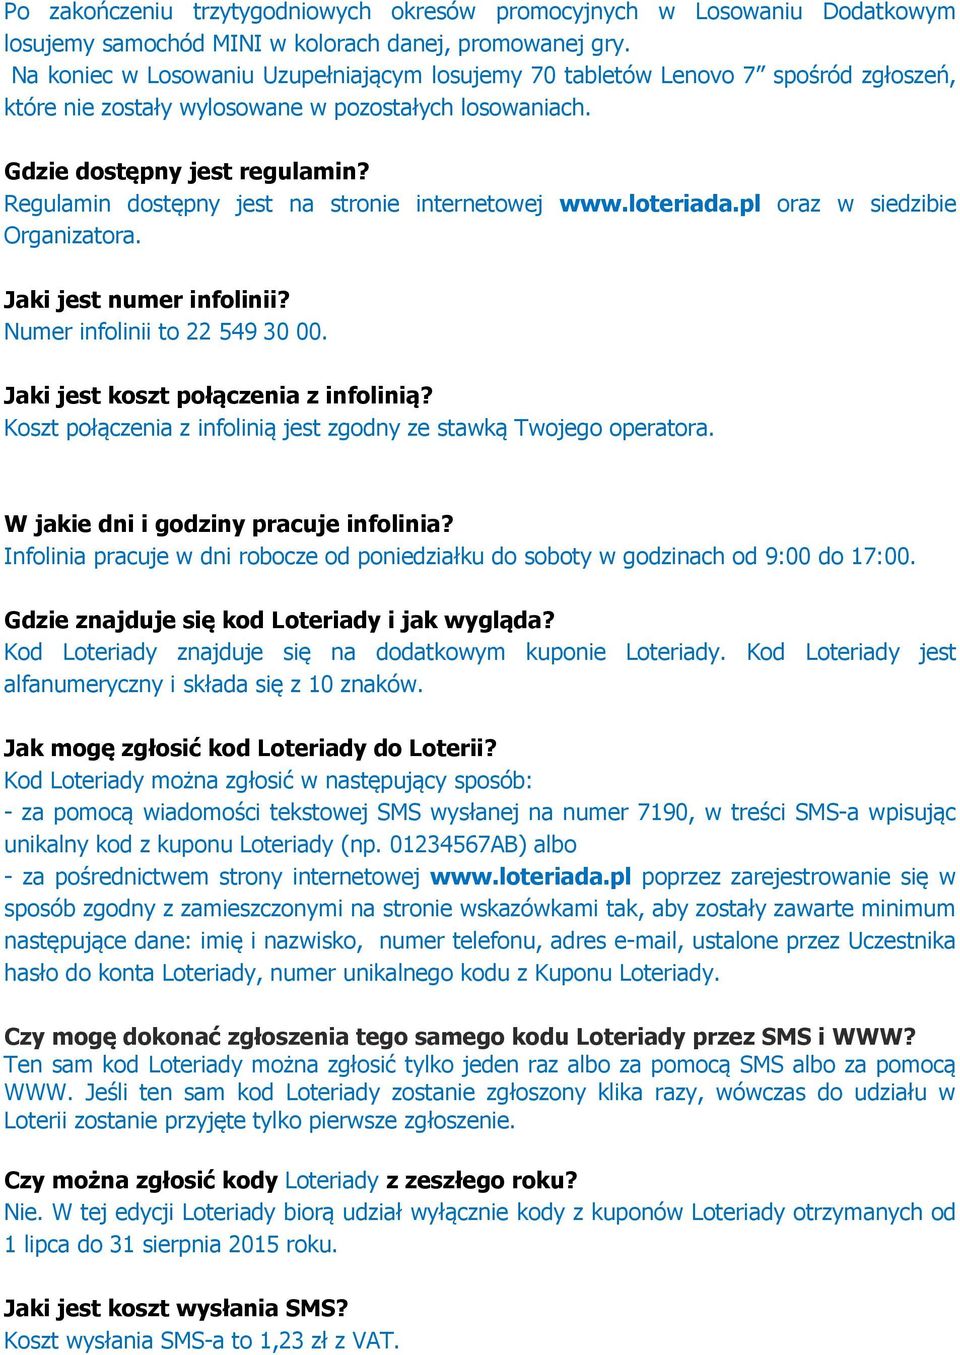 Regulamin dostępny jest na stronie internetowej www.loteriada.pl oraz w siedzibie Organizatora. Jaki jest numer infolinii? Numer infolinii to 22 549 30 00. Jaki jest koszt połączenia z infolinią?